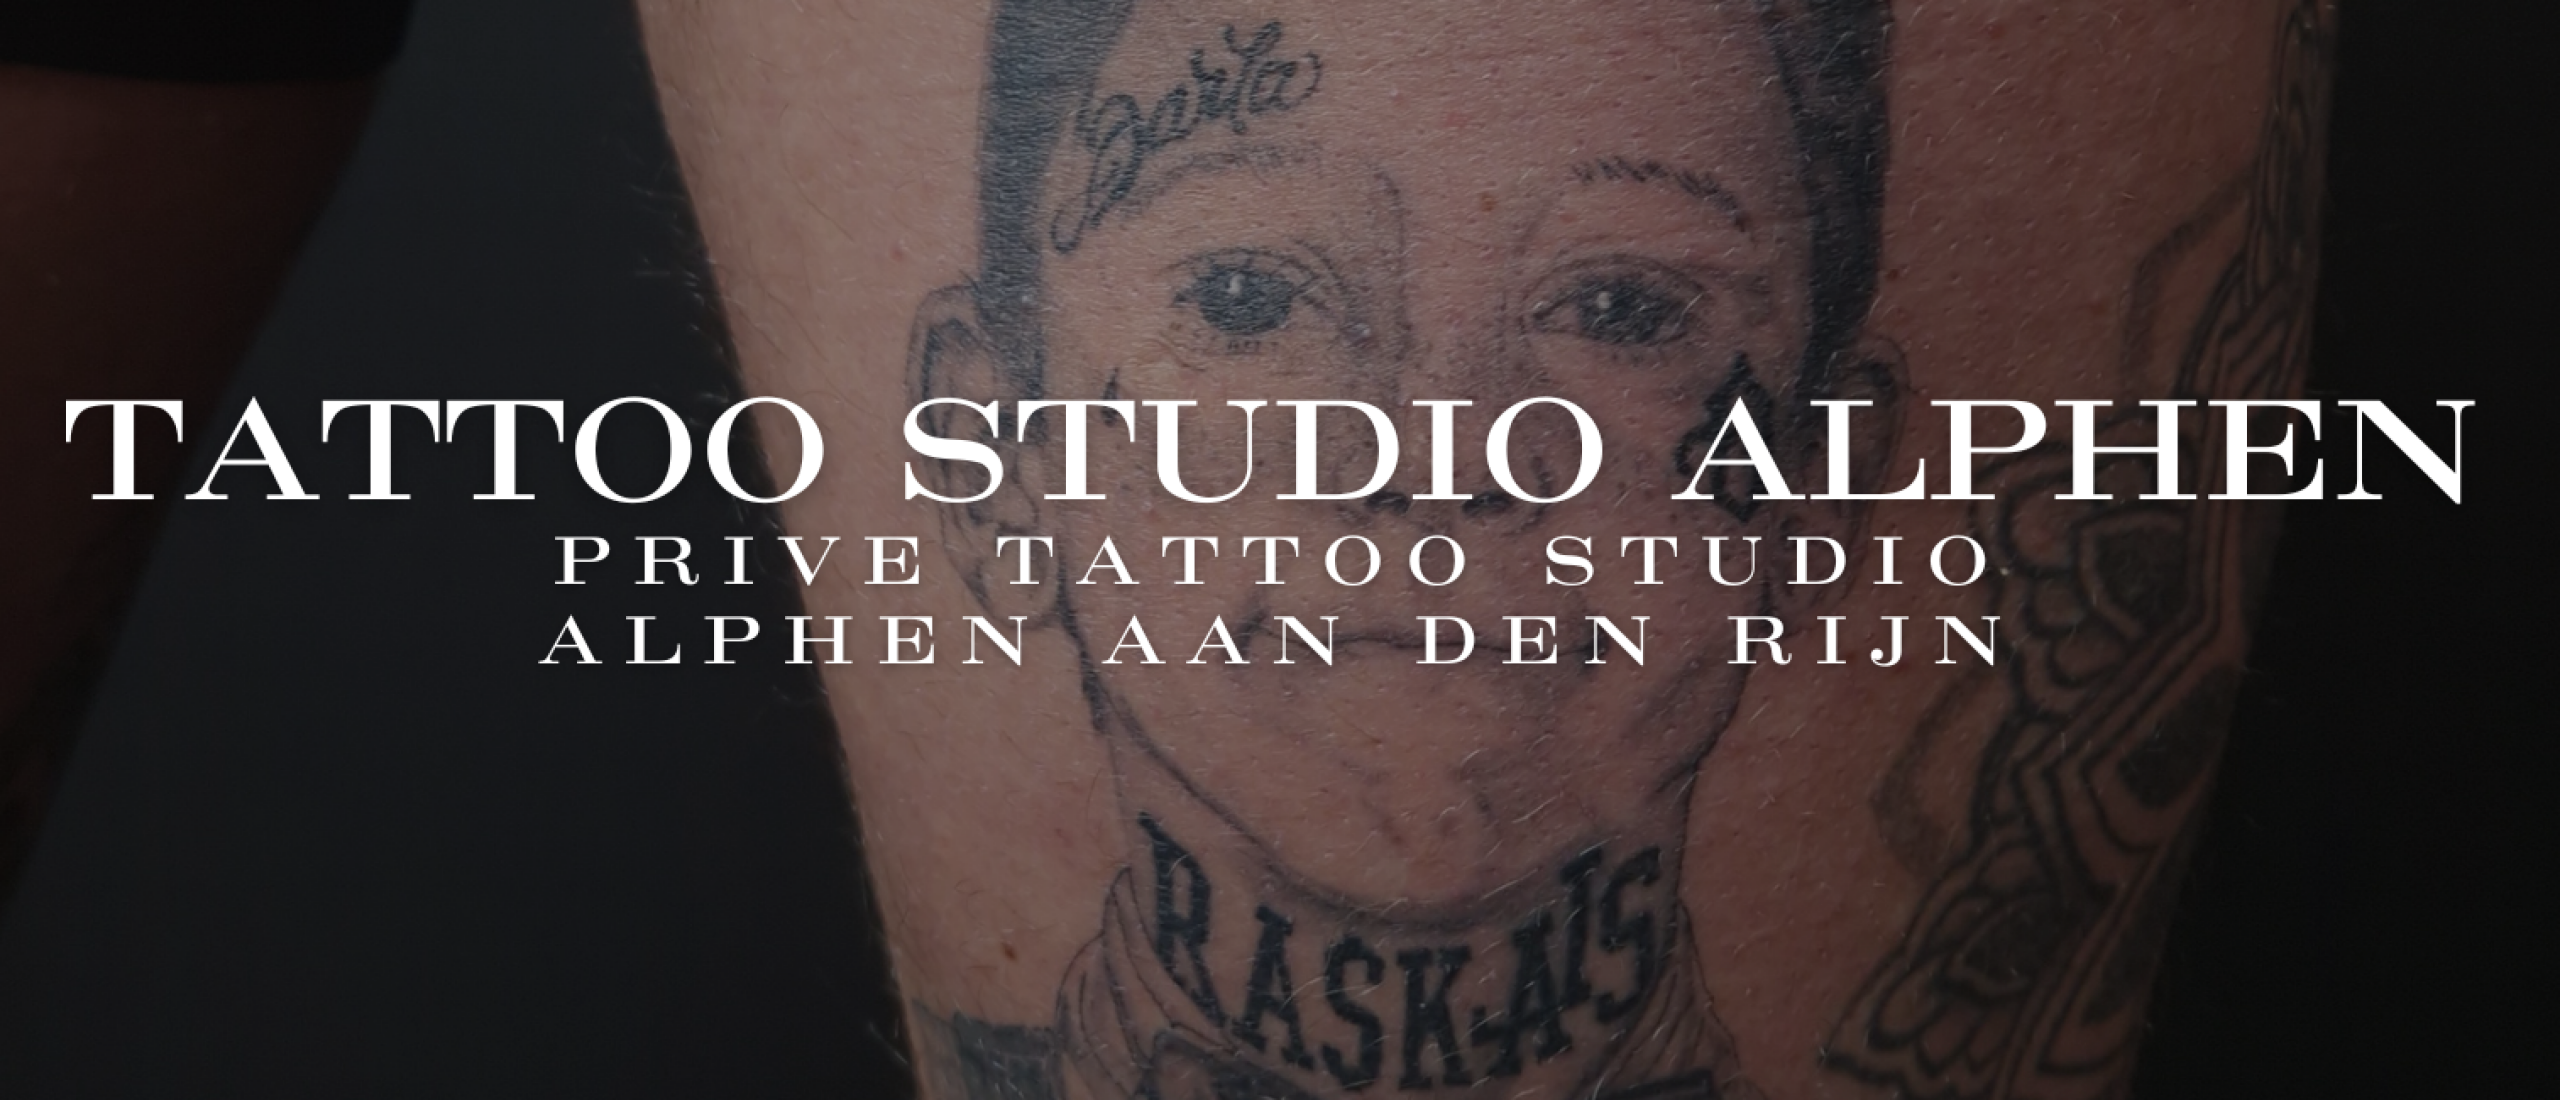 Tattoo studio alphen aan den rijn